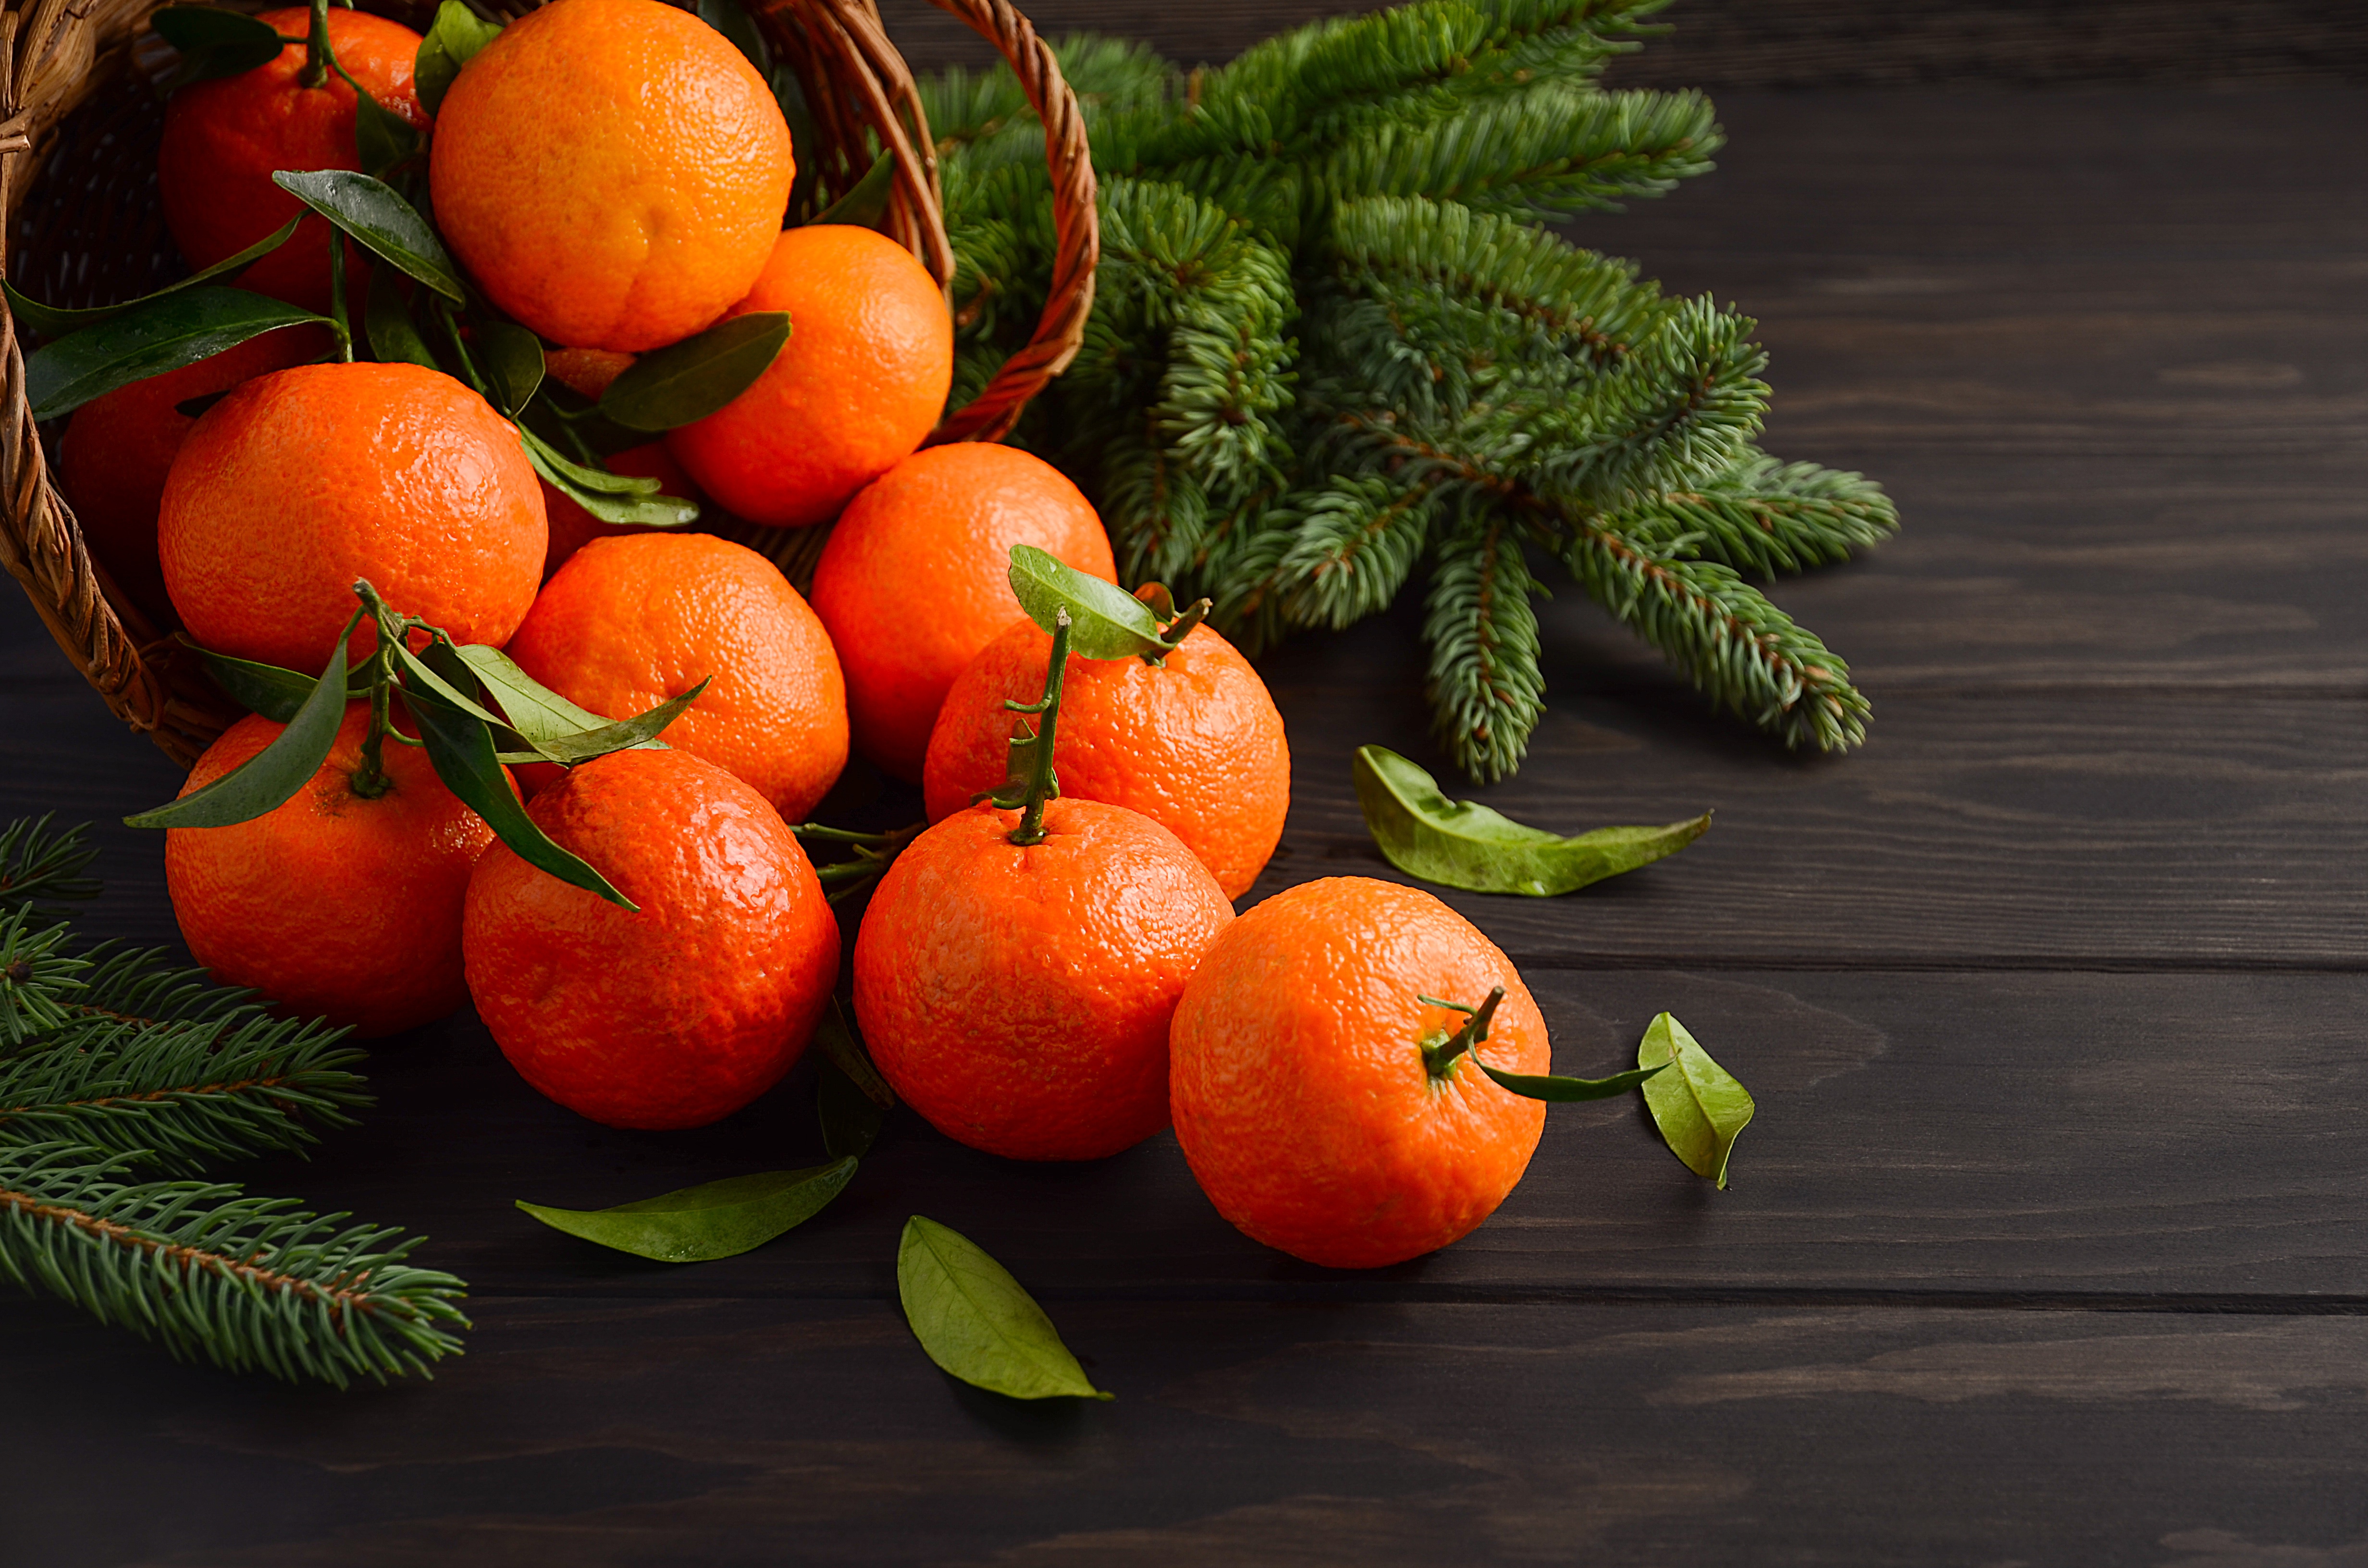 Теле мандарины. Egyptian Citrus мандарины. Мандарины новый год. Мандарины на новогоднем столе. Мандарины и елка.